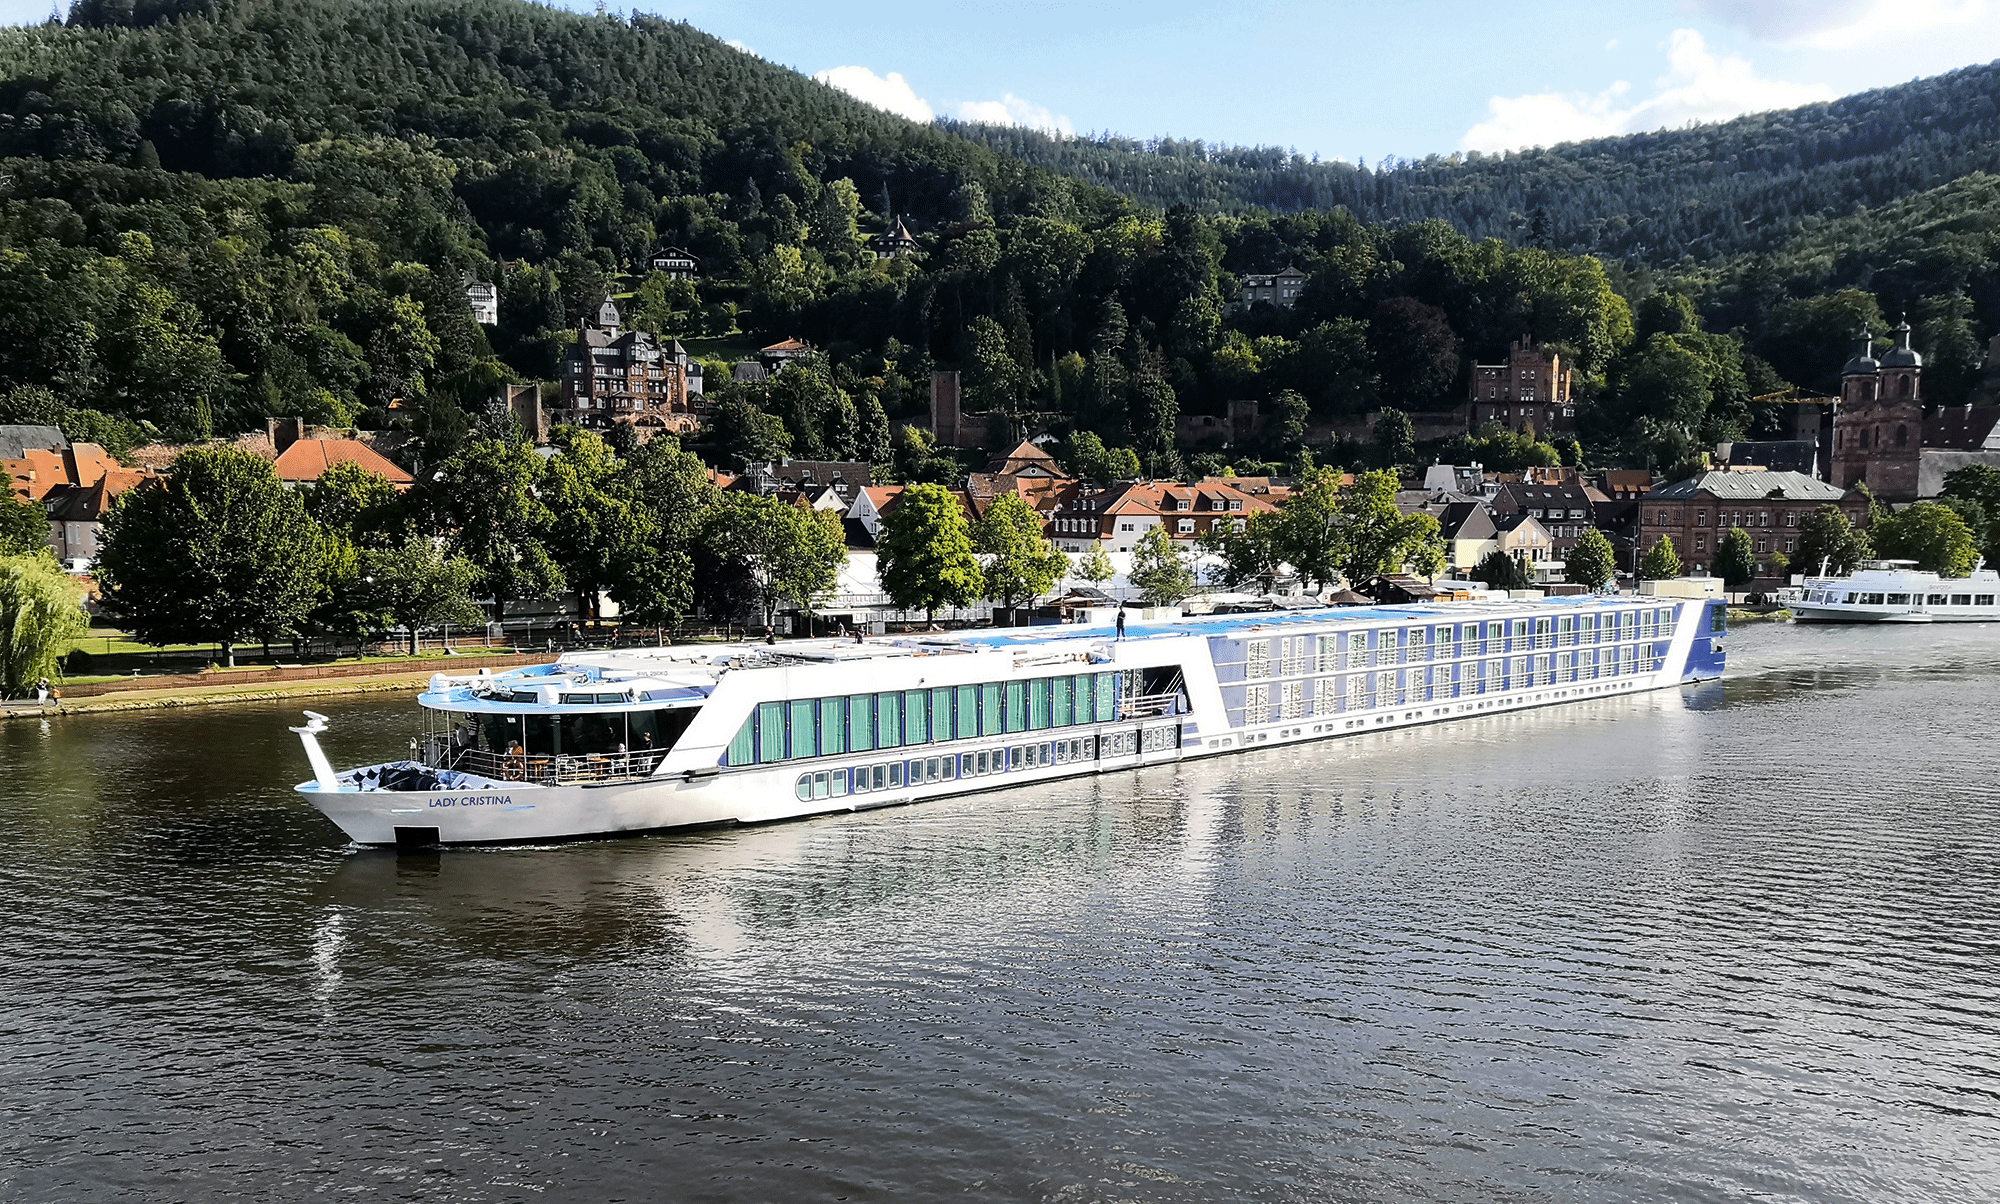 M/S Lady Cristina 7 Tage Donau – ein Fluss, vier Länder